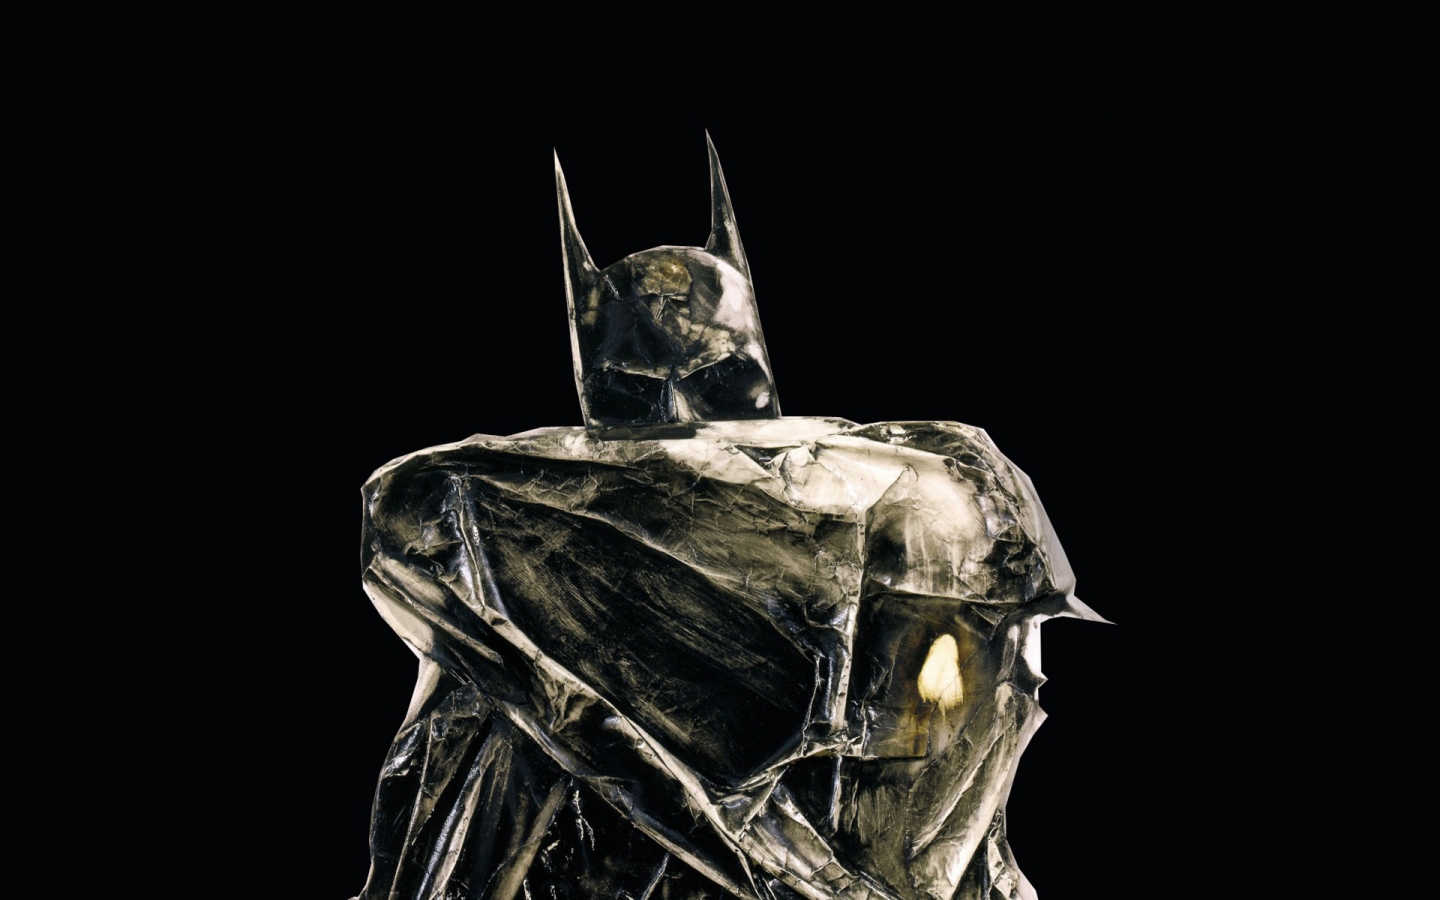 Iron Batman for 1440 x 900 widescreen resolution